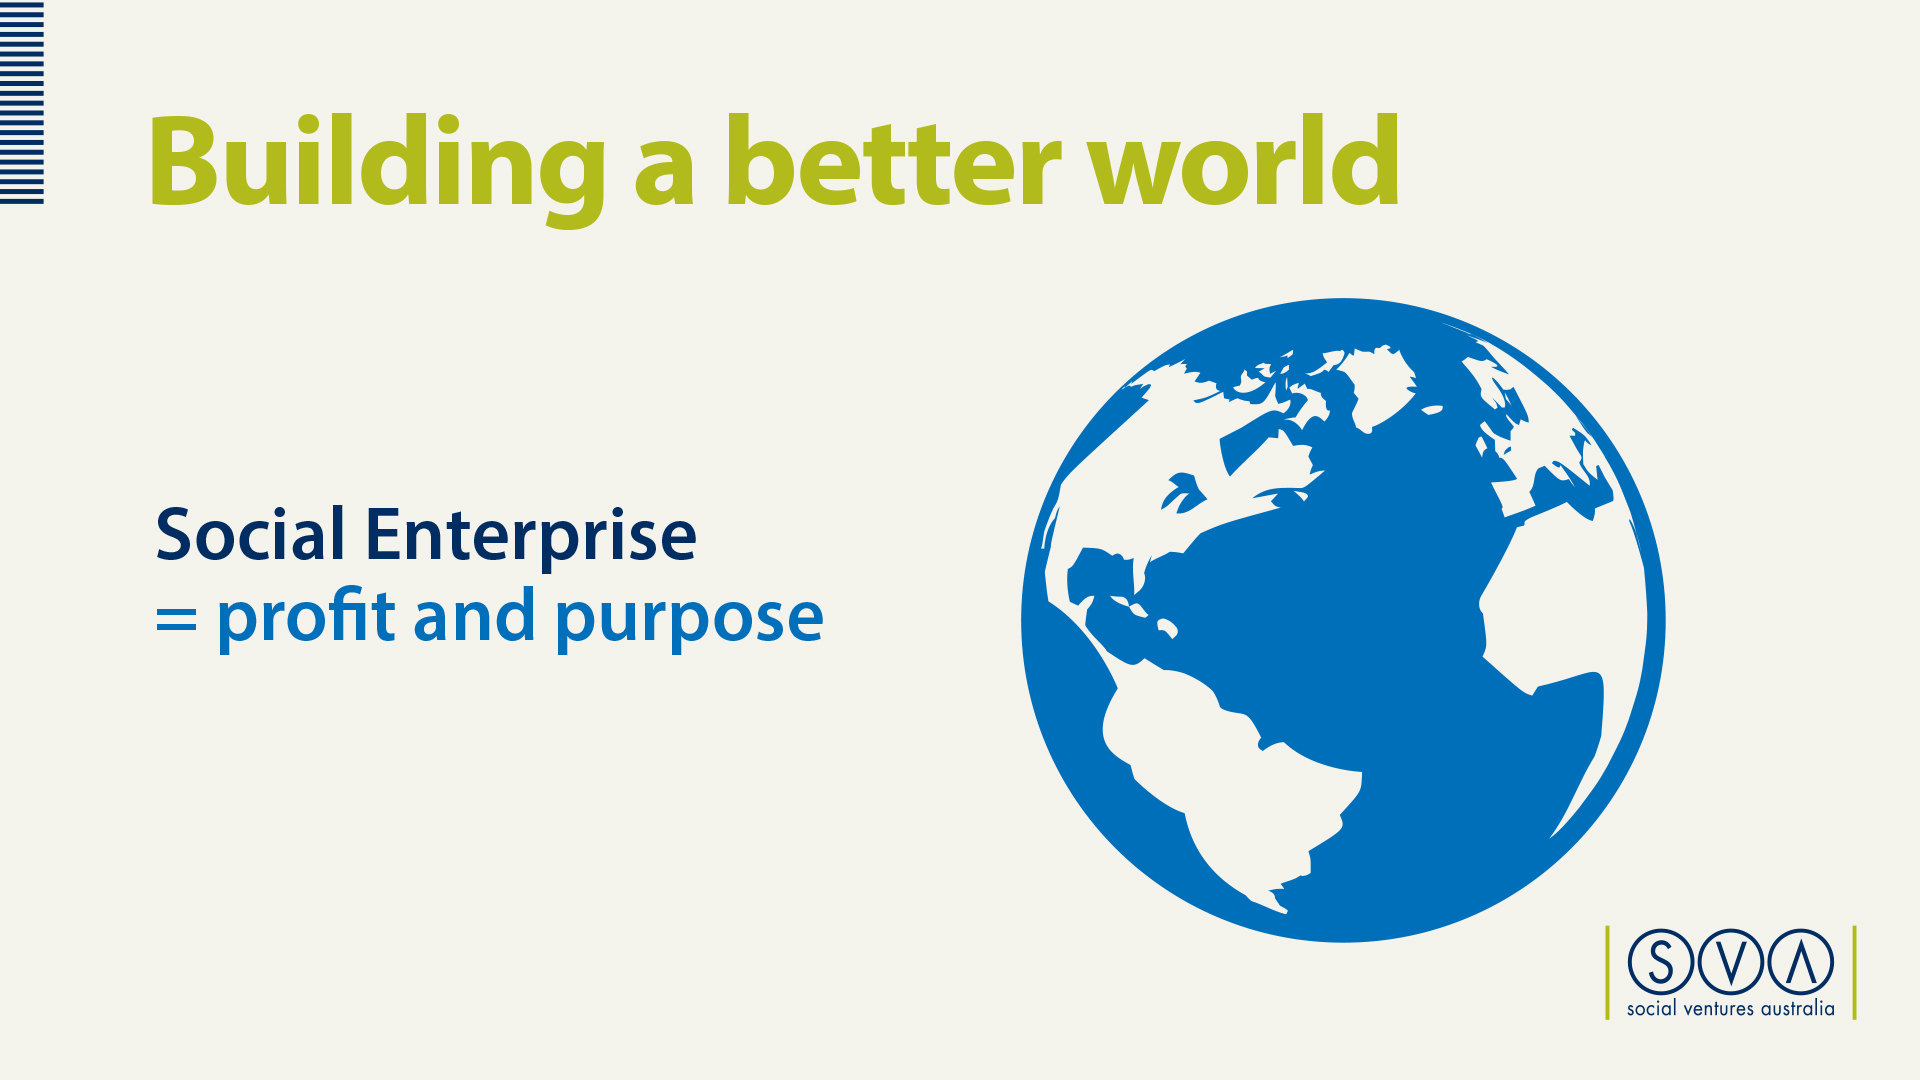 World society. Social Enterprise. Better World. Picture of social Enterprise. Enterprise profit.